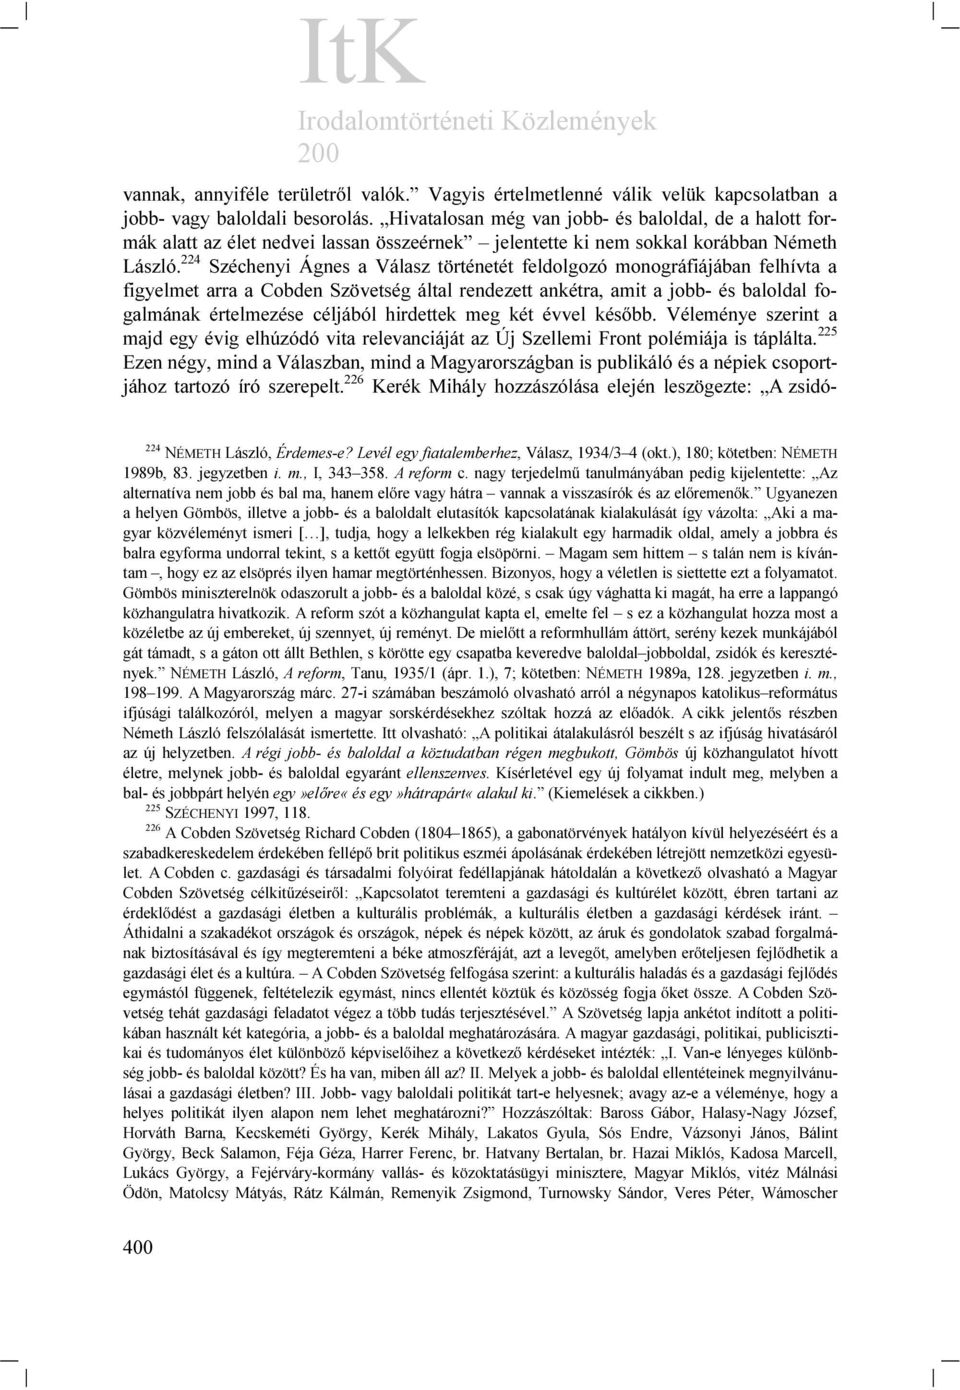 224 Széchenyi Ágnes a Válasz történetét feldolgozó monográfiájában felhívta a figyelmet arra a Cobden Szövetség által rendezett ankétra, amit a jobb- és baloldal fogalmának értelmezése céljából